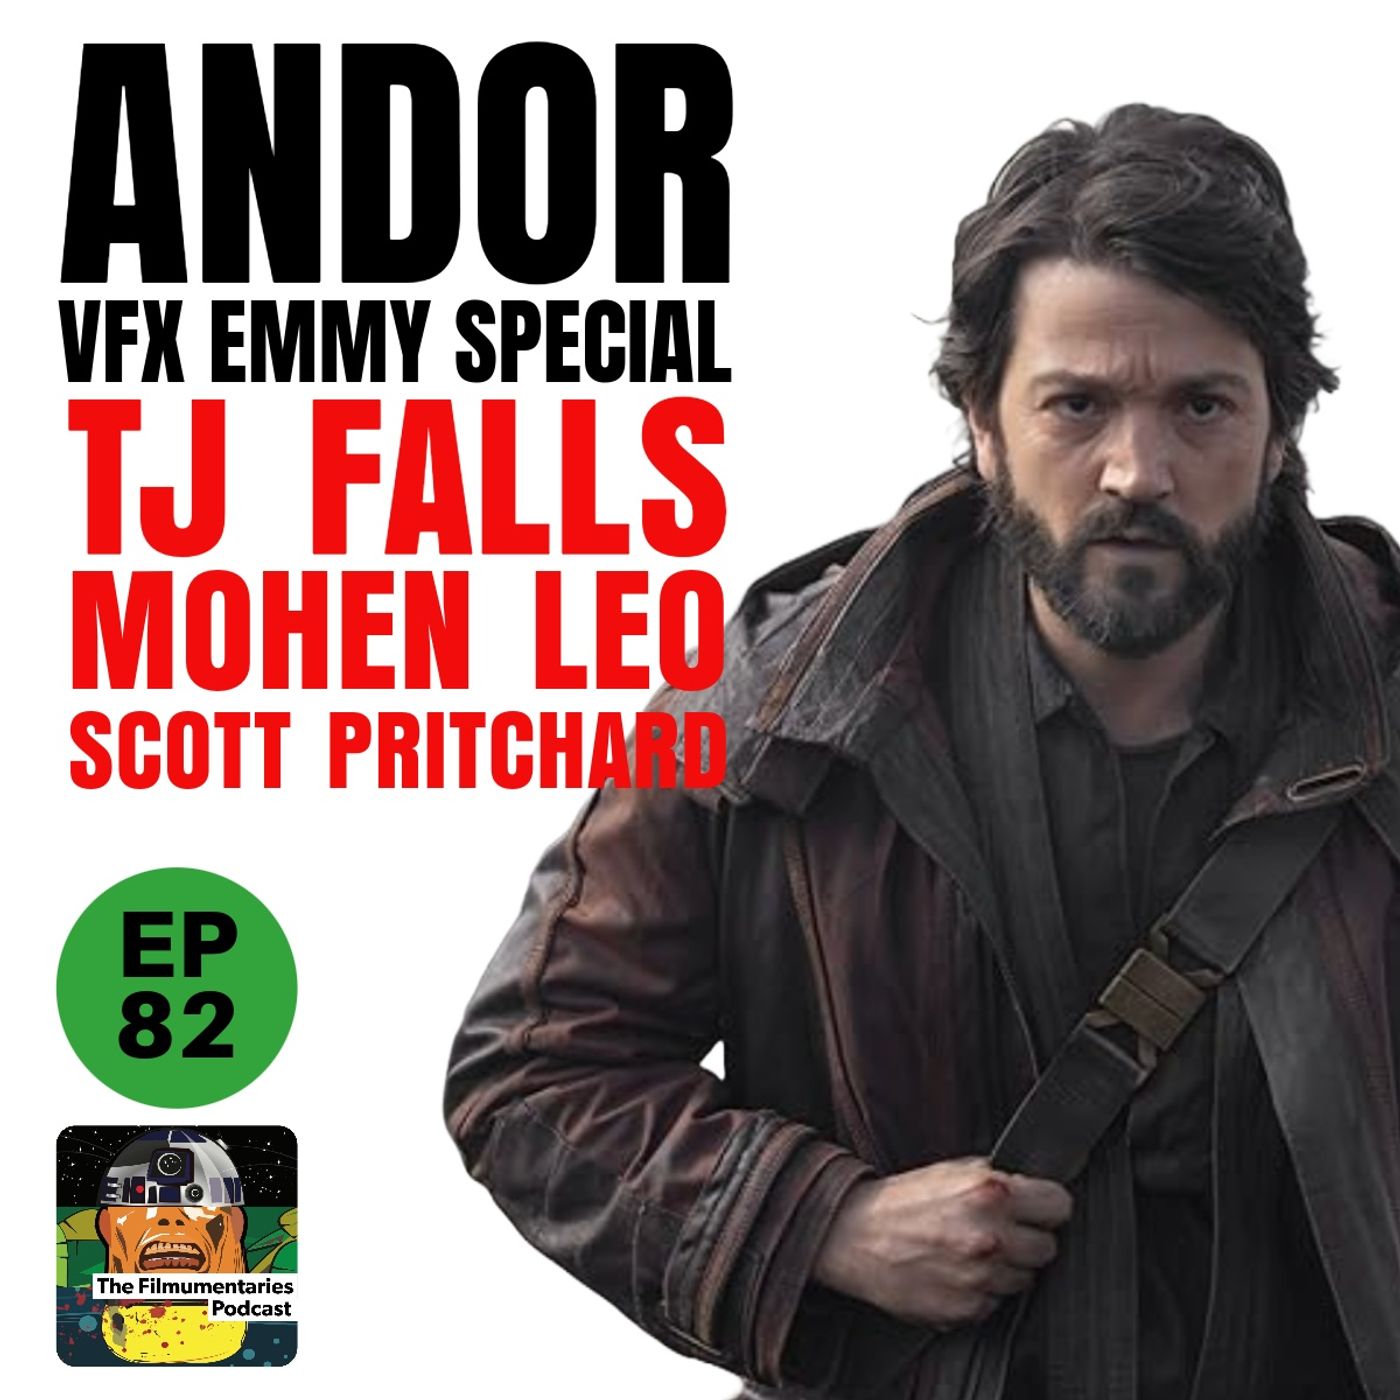 82 - Andor VFX Emmy Special - Mohen Leo, TJ Falls, Scott Pritchard